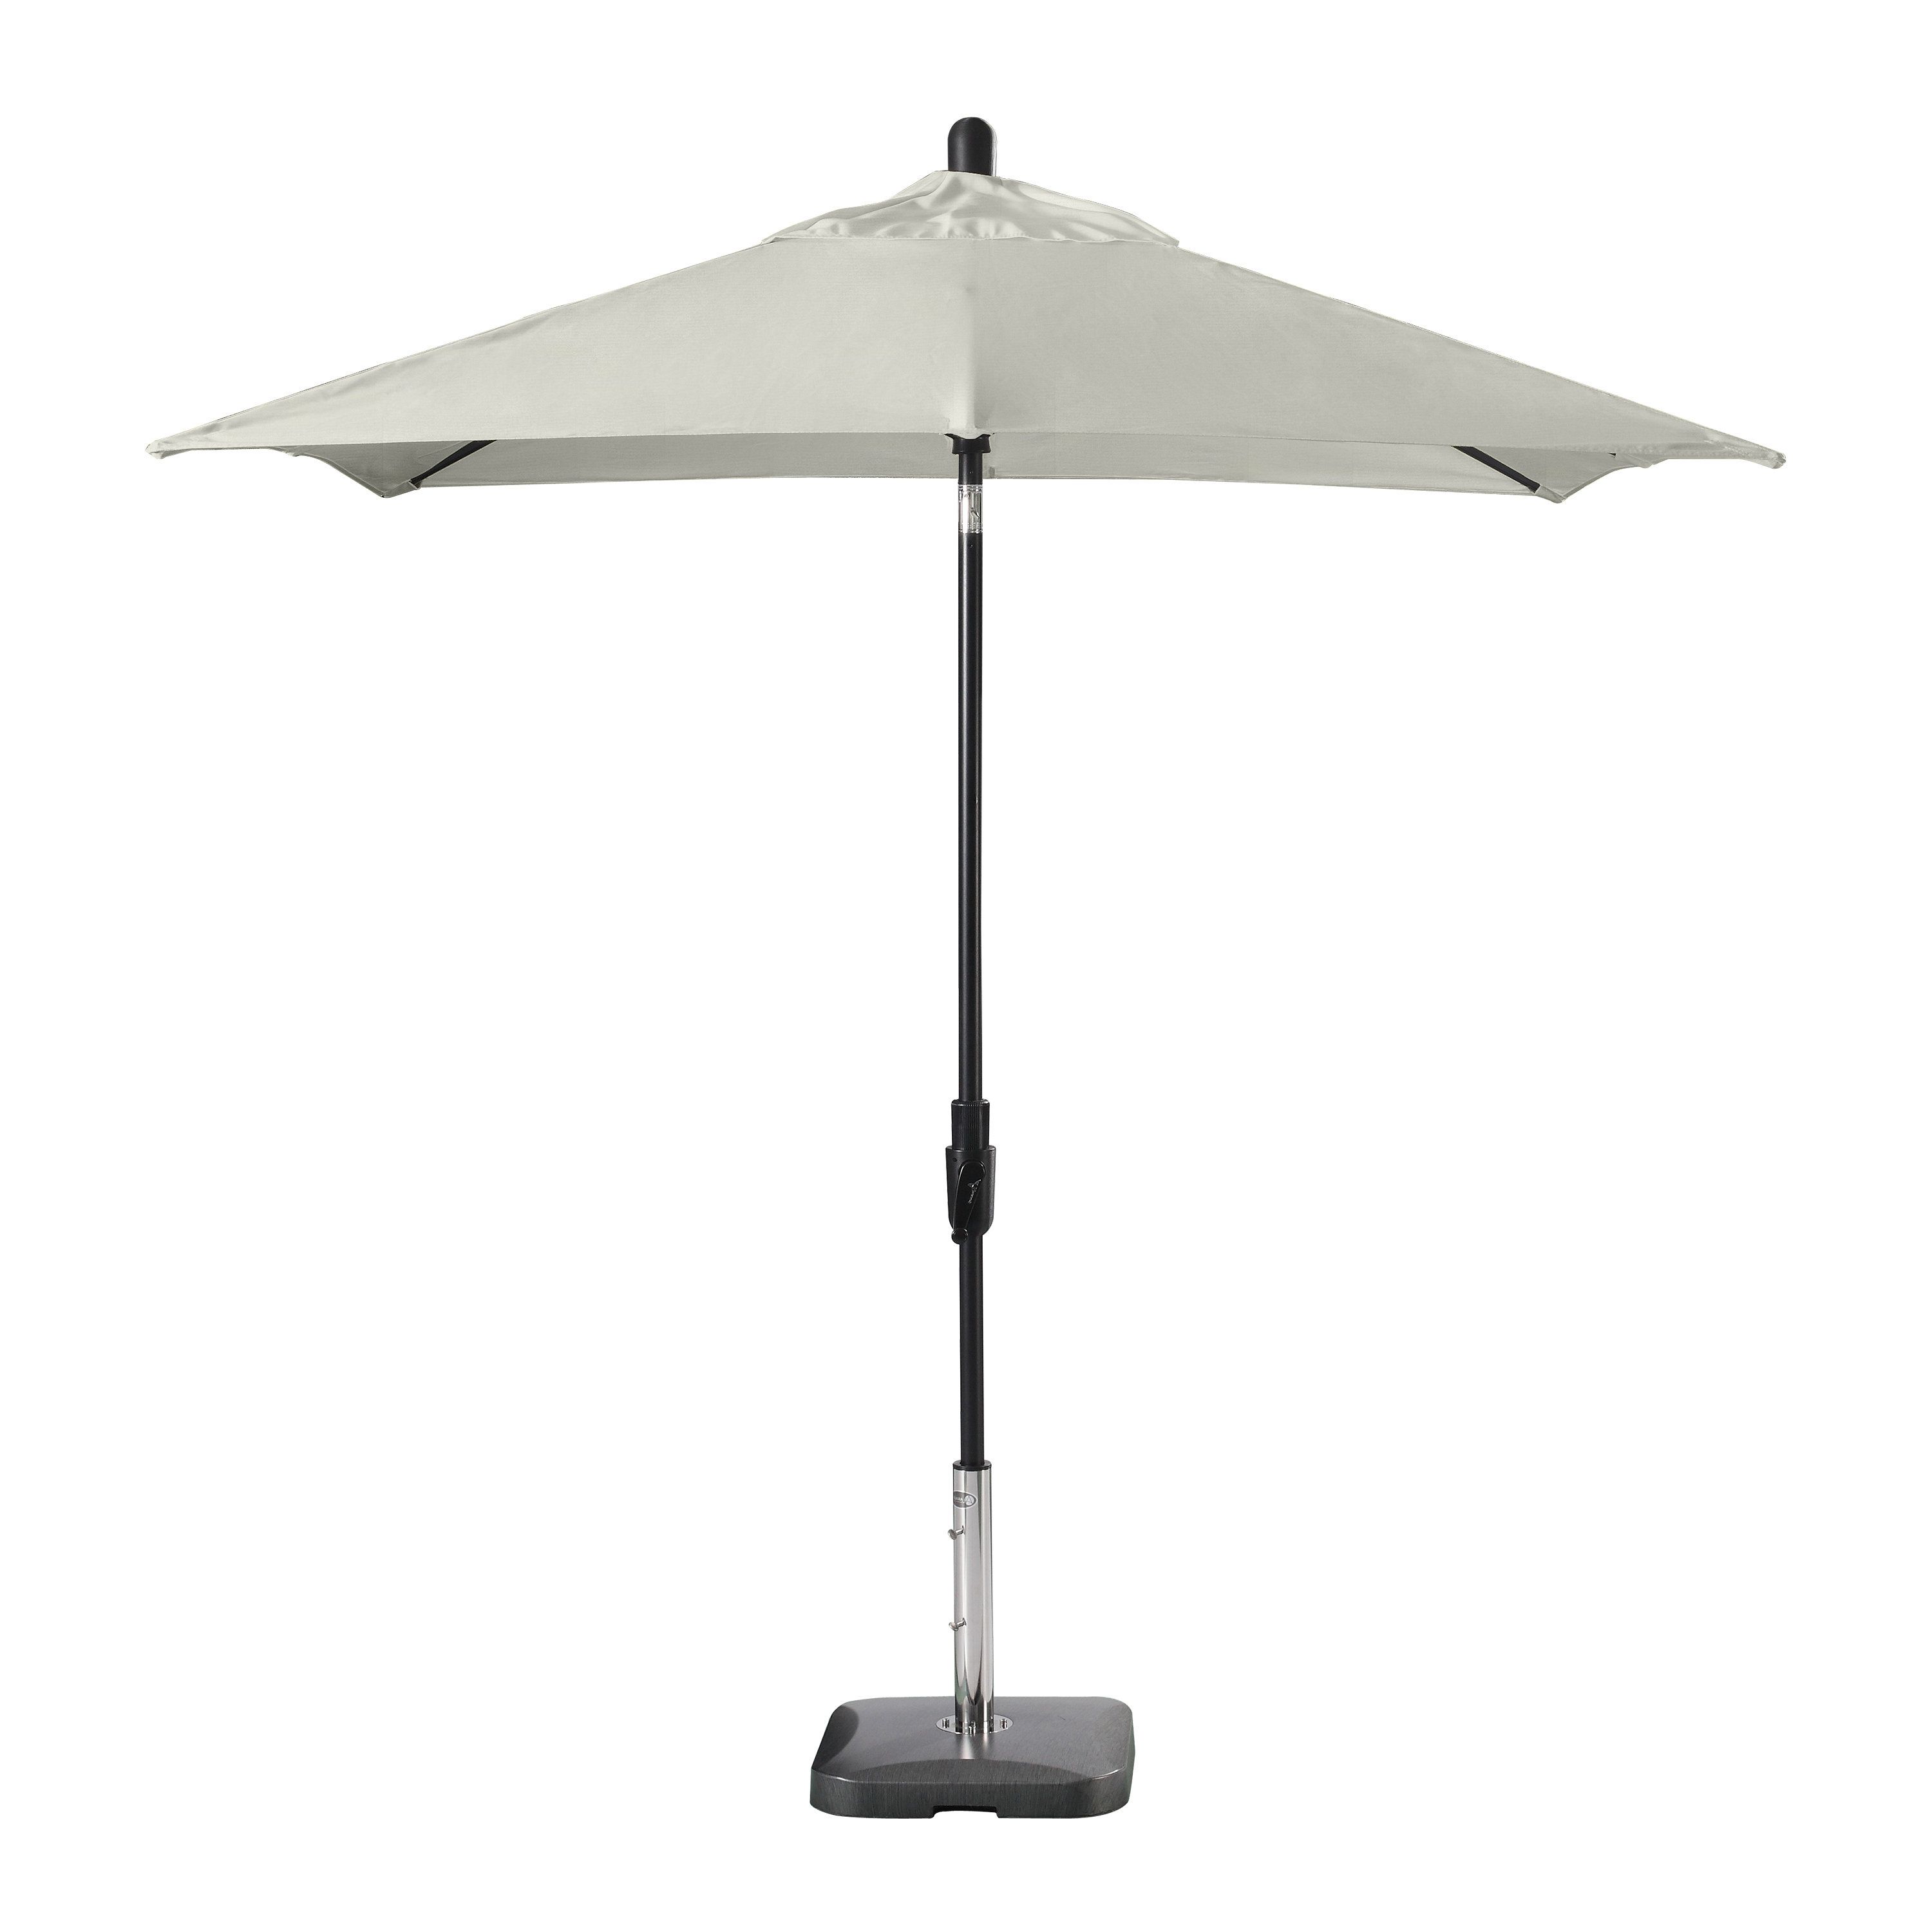 Caravelle Market Sunbrella Umbrellas For Fashionable Wiebe Auto Tilt 7.5' Square Market Sunbrella Umbrella (Photo 4 of 20)